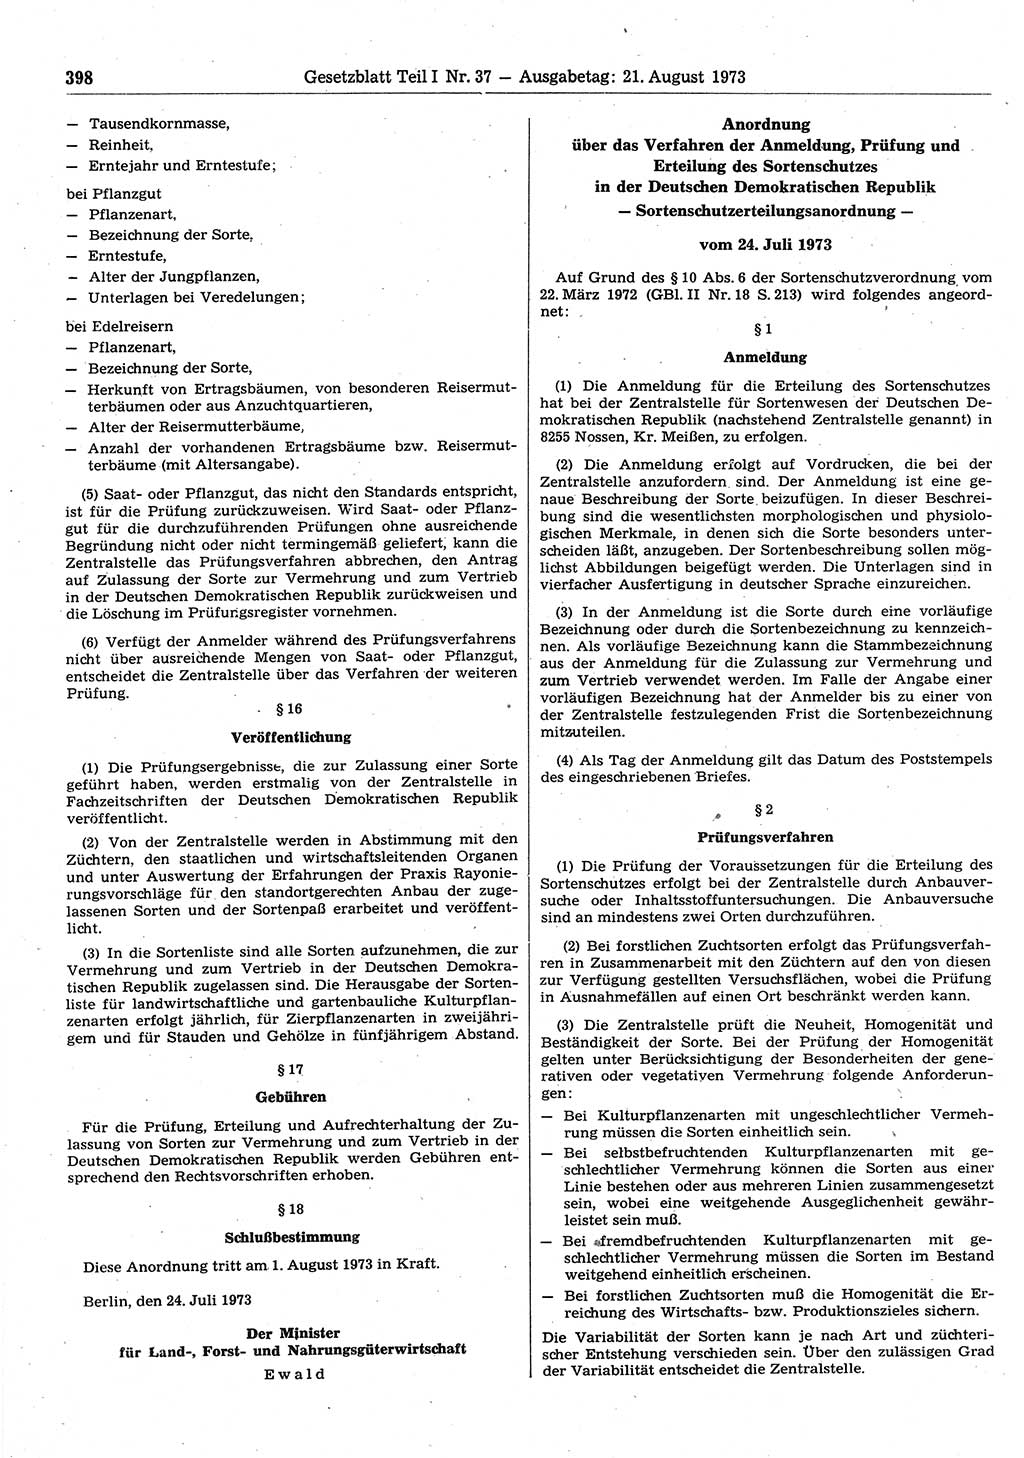 Gesetzblatt (GBl.) der Deutschen Demokratischen Republik (DDR) Teil Ⅰ 1973, Seite 398 (GBl. DDR Ⅰ 1973, S. 398)